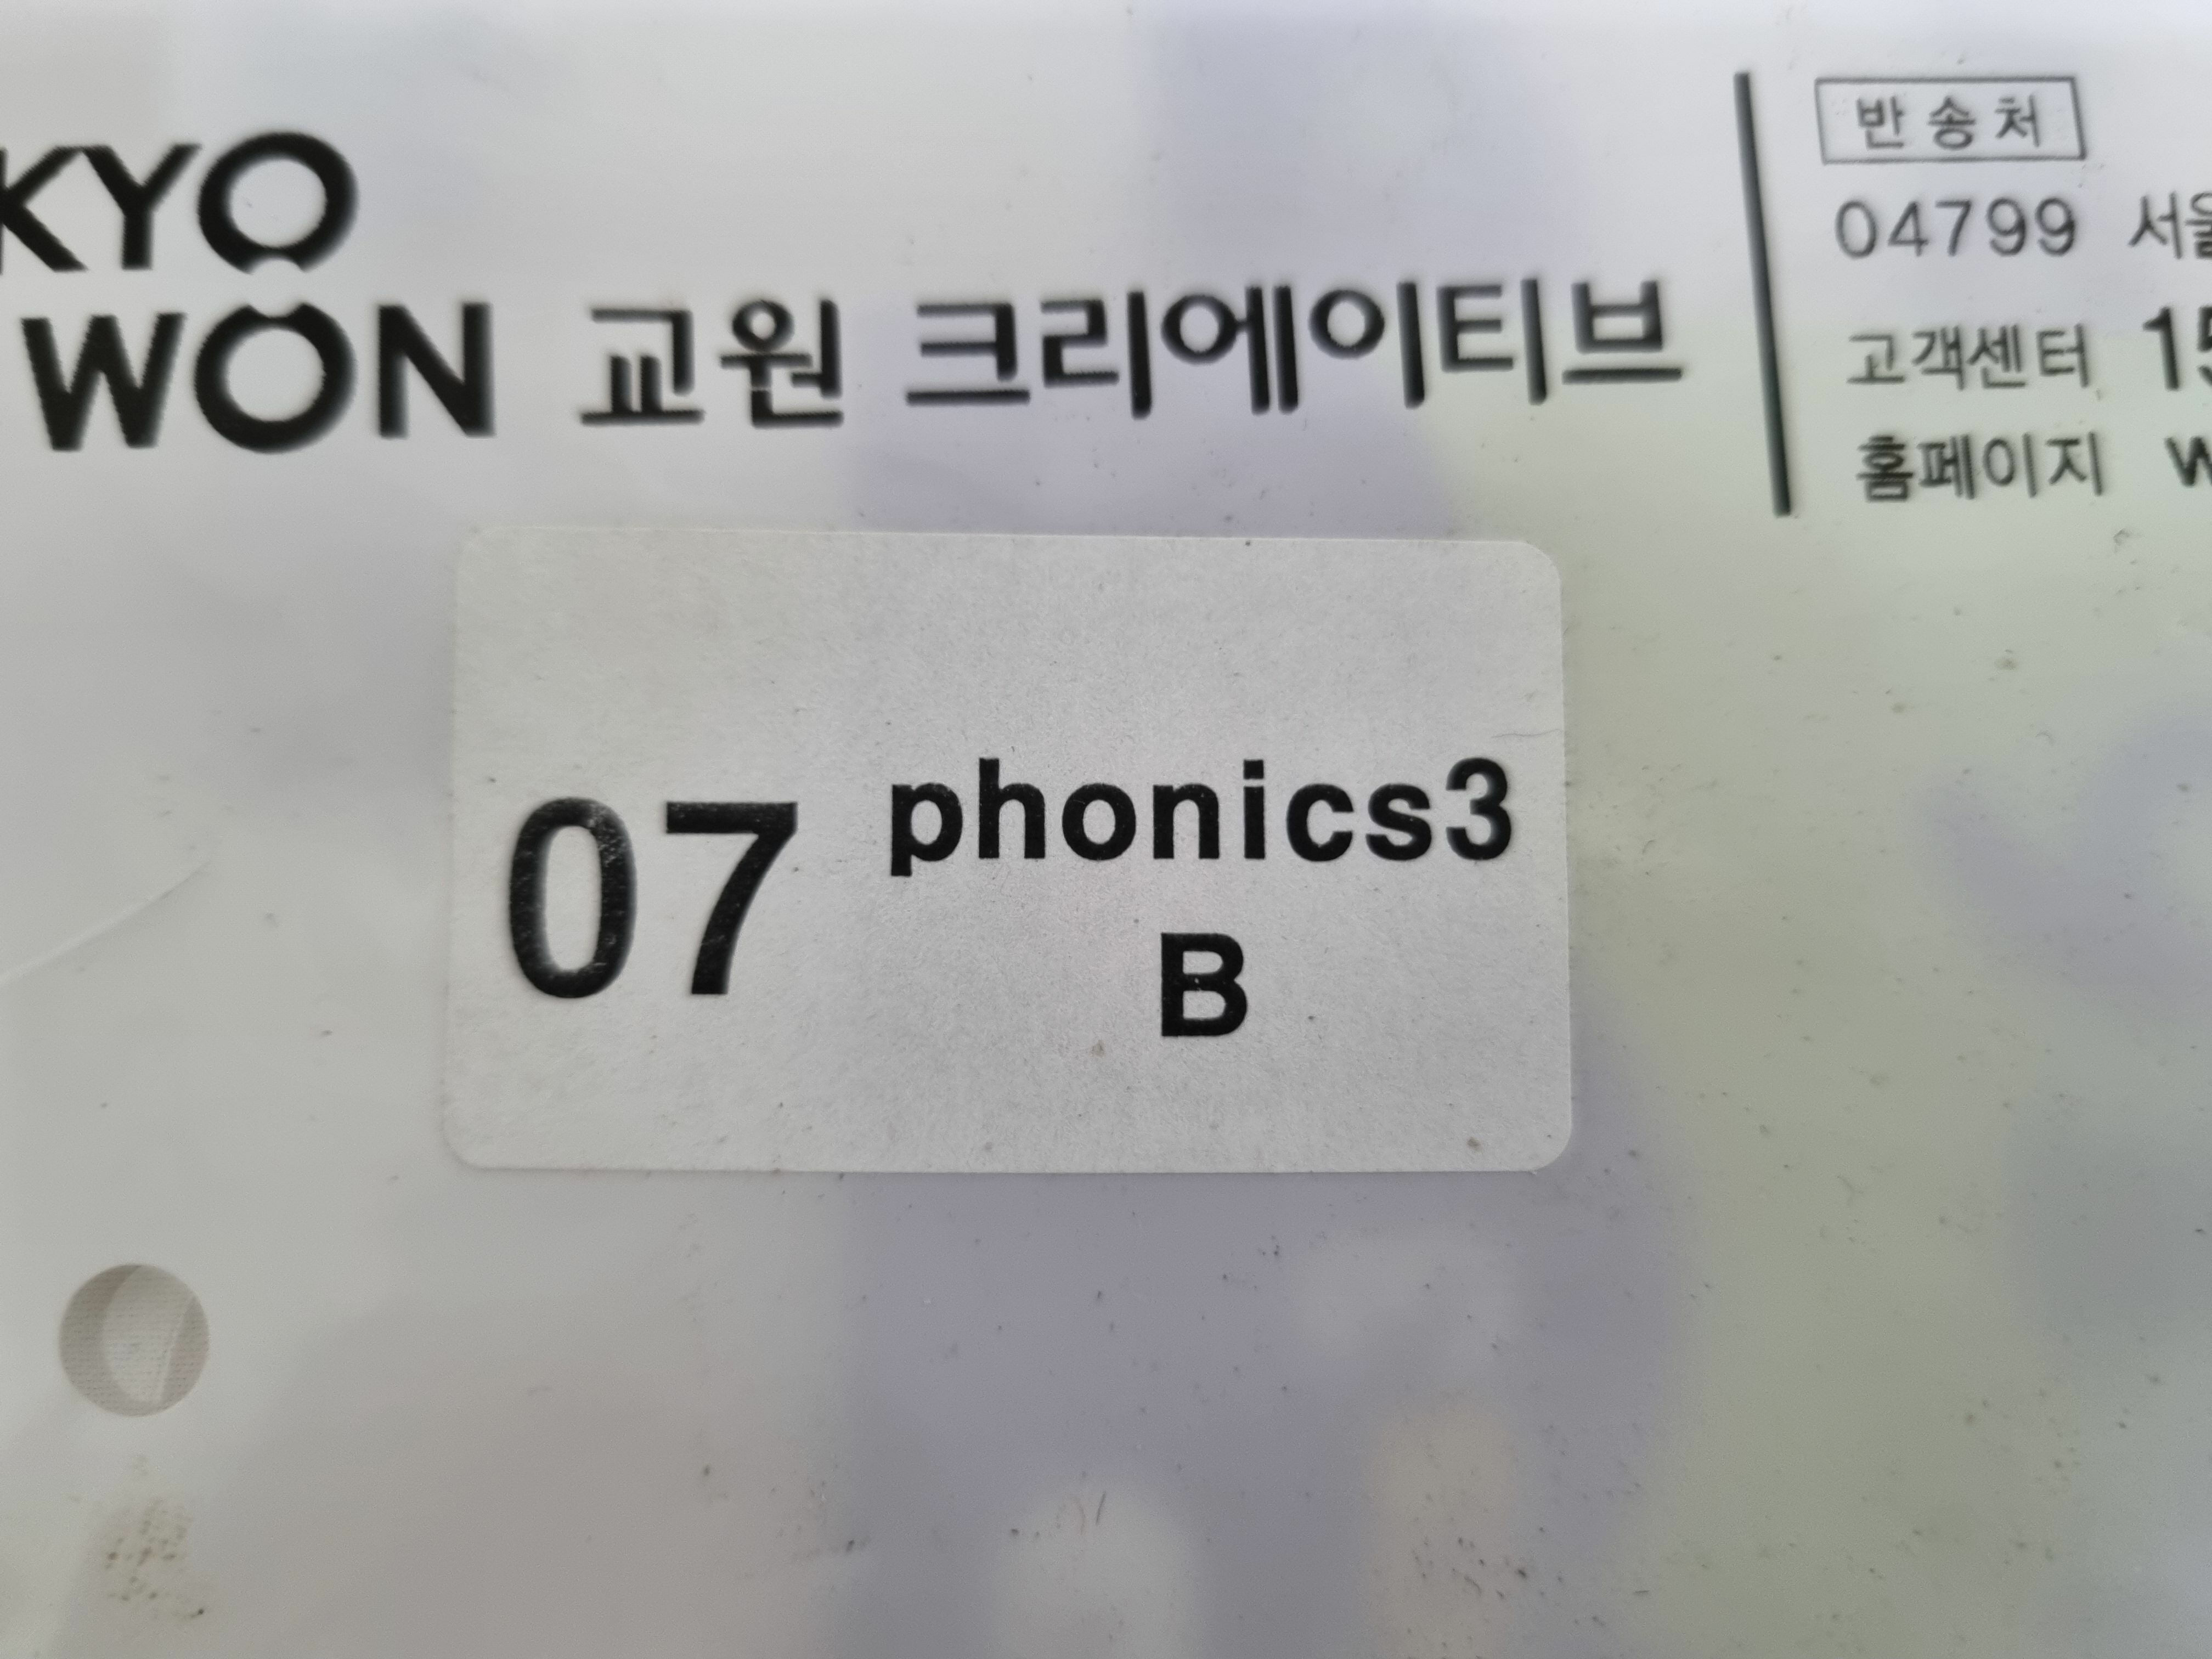 [중고] 도요새 잉글리쉬 멤버스 Doyose Phonics 3B set (1개월분) -- 상세사진 올림 최상급 미활용책